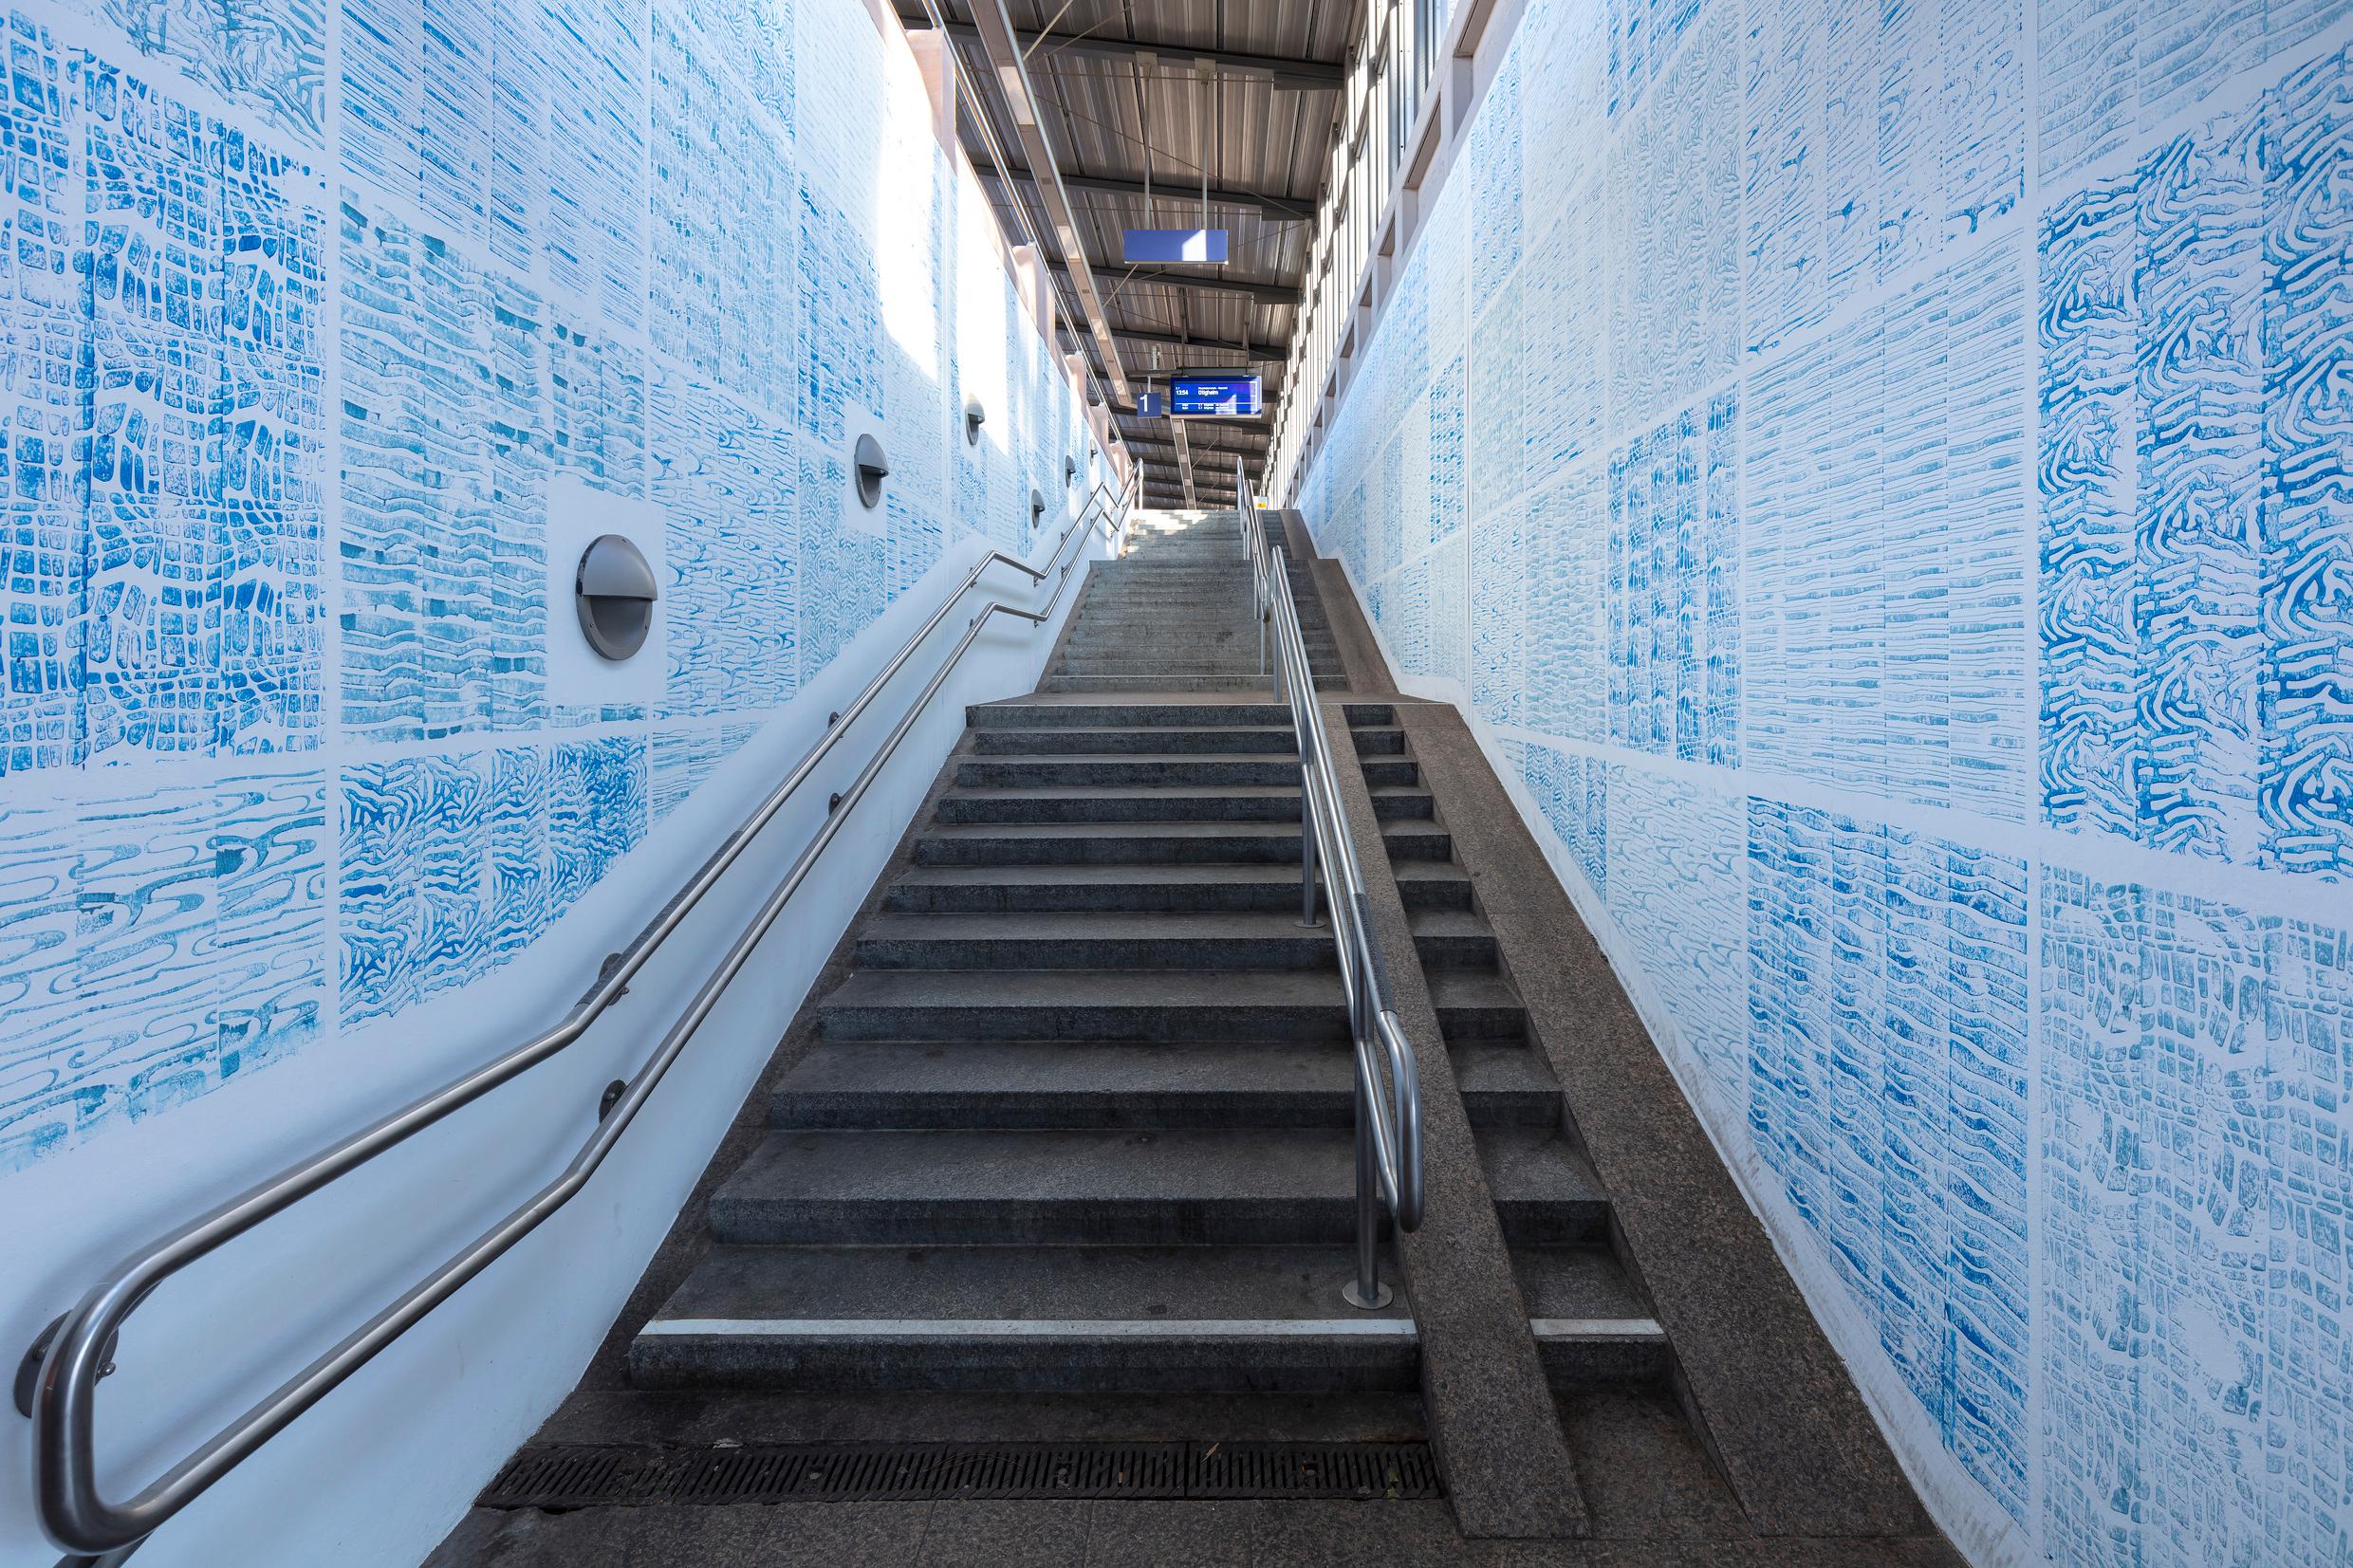 Bahnsteigzugang mit blauem Mosaik an den Wänden